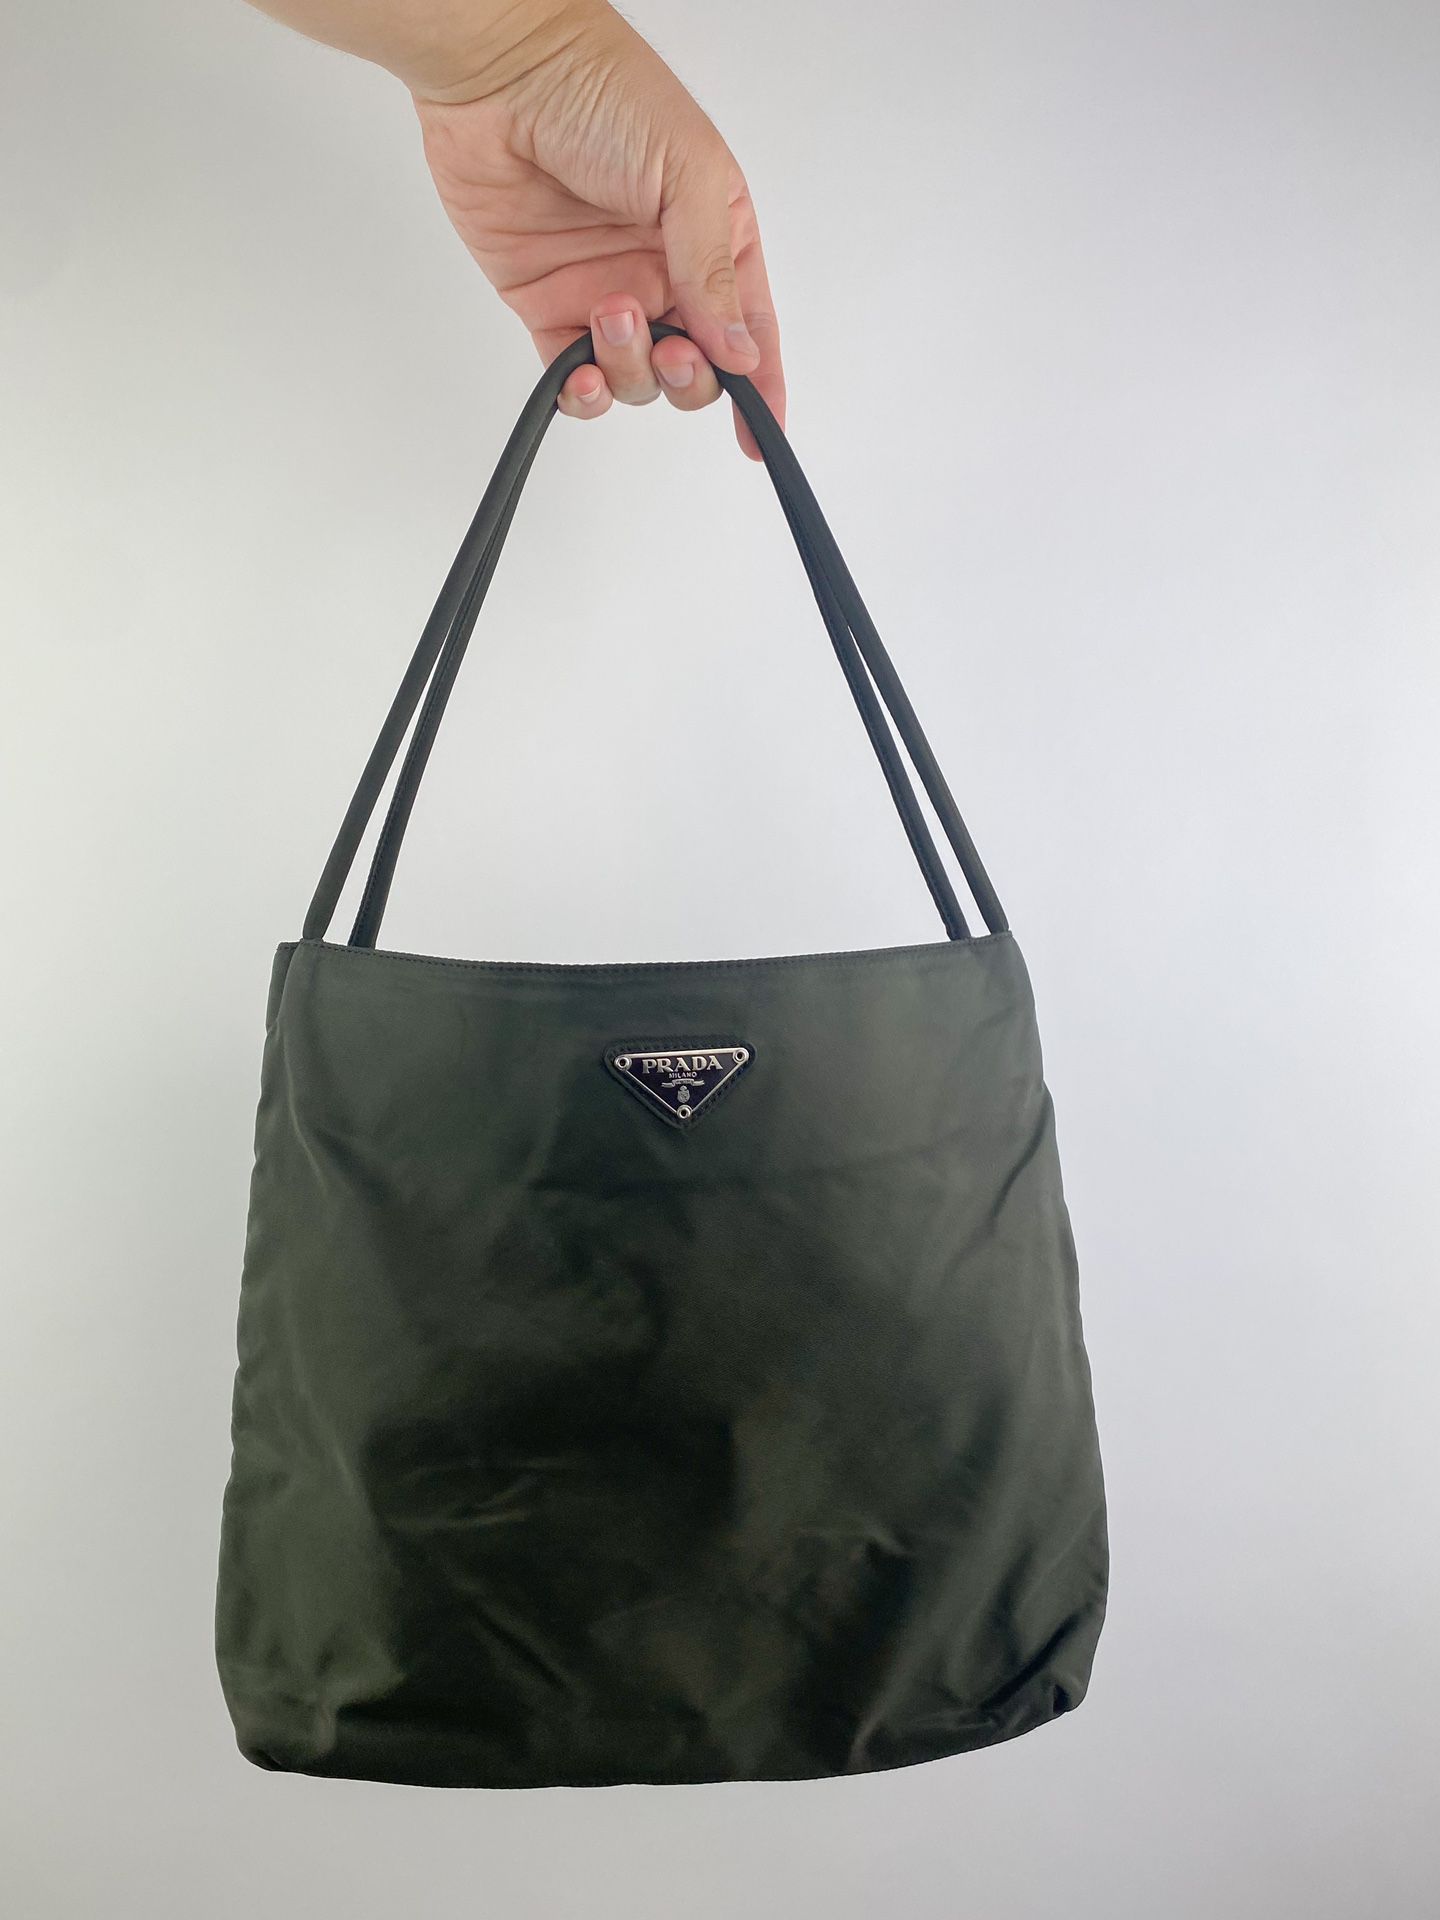 Dark Olive Prada Tote Bag (with original Dustbag)